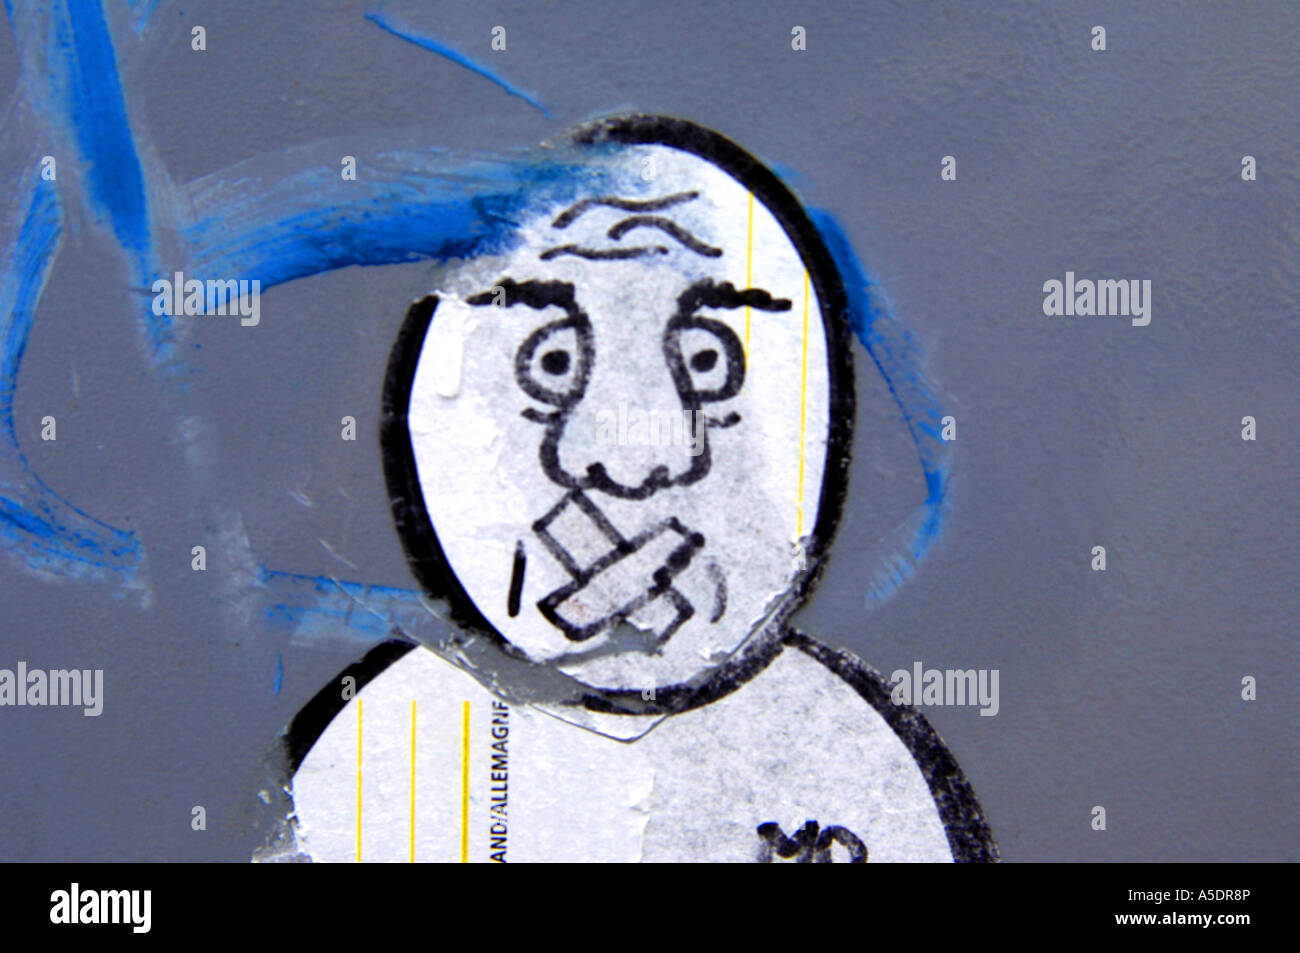 Graffiti-Aufkleber Glatze Gesicht Mann männliche Cartoon Karikatur Kunst künstlerisch weiß grau lustige Jugend urban street-Art-grüne Entwurfsmodus Stockfoto